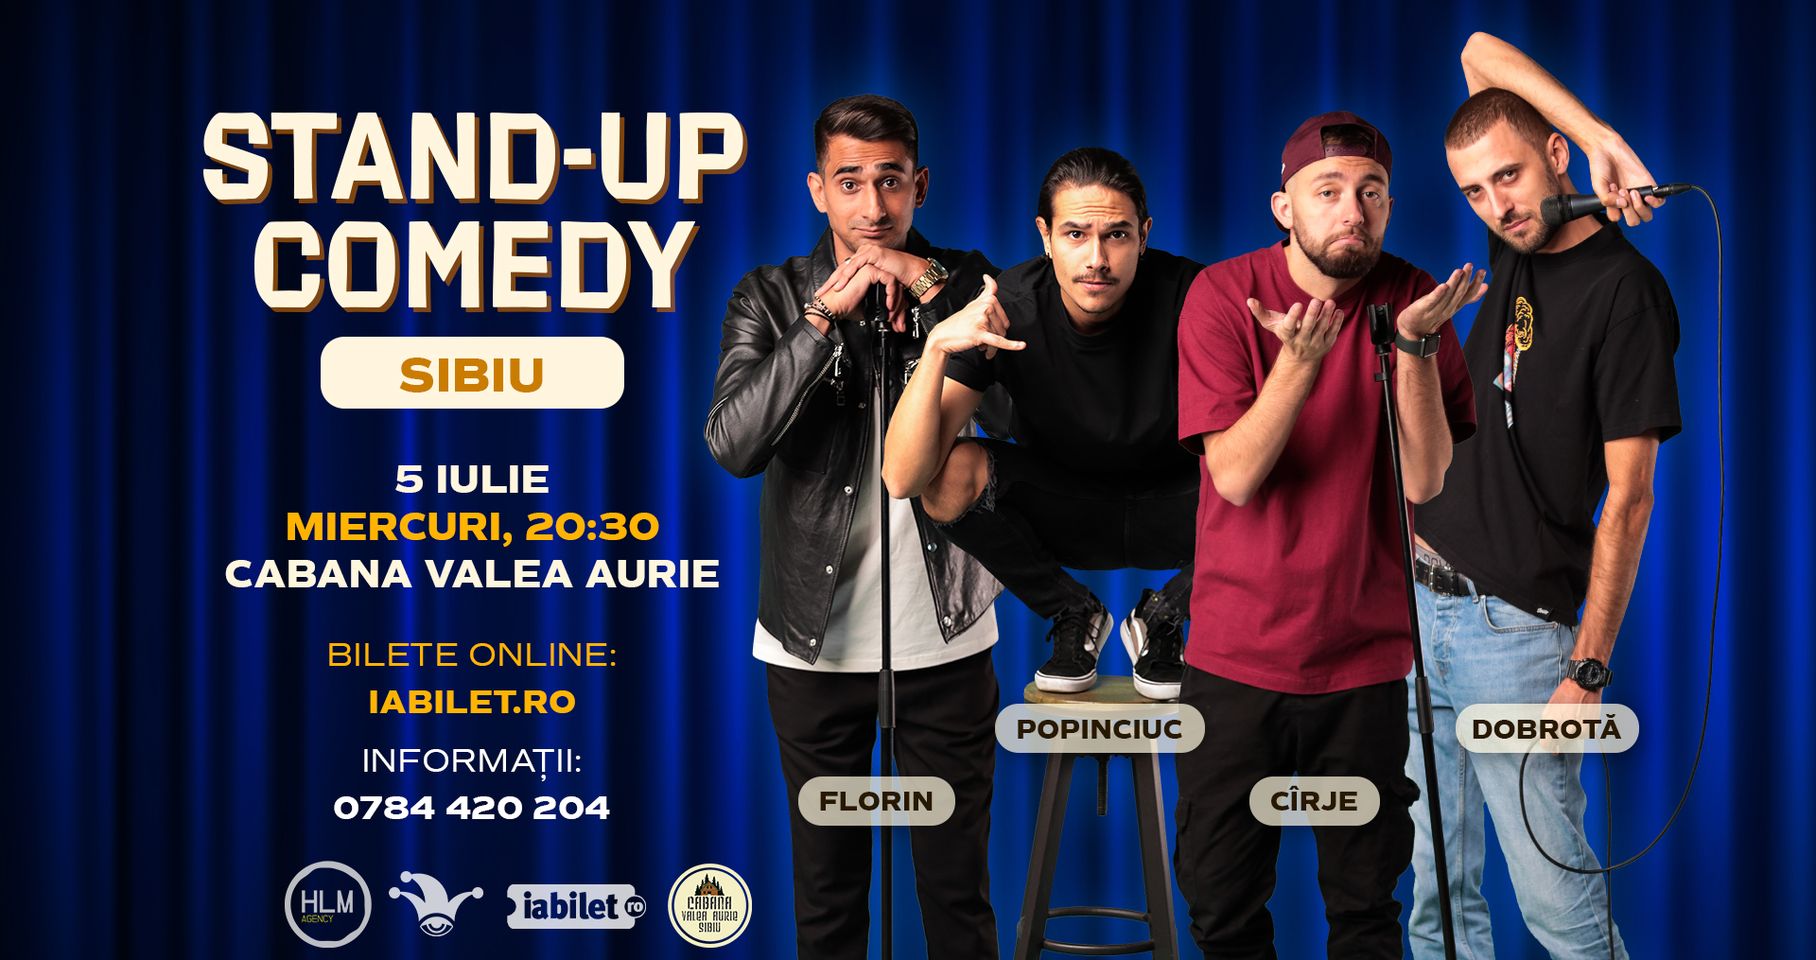 SIBIU | Stand-up Comedy cu Cîrje, Florin, Dobrotă și Popinciuc